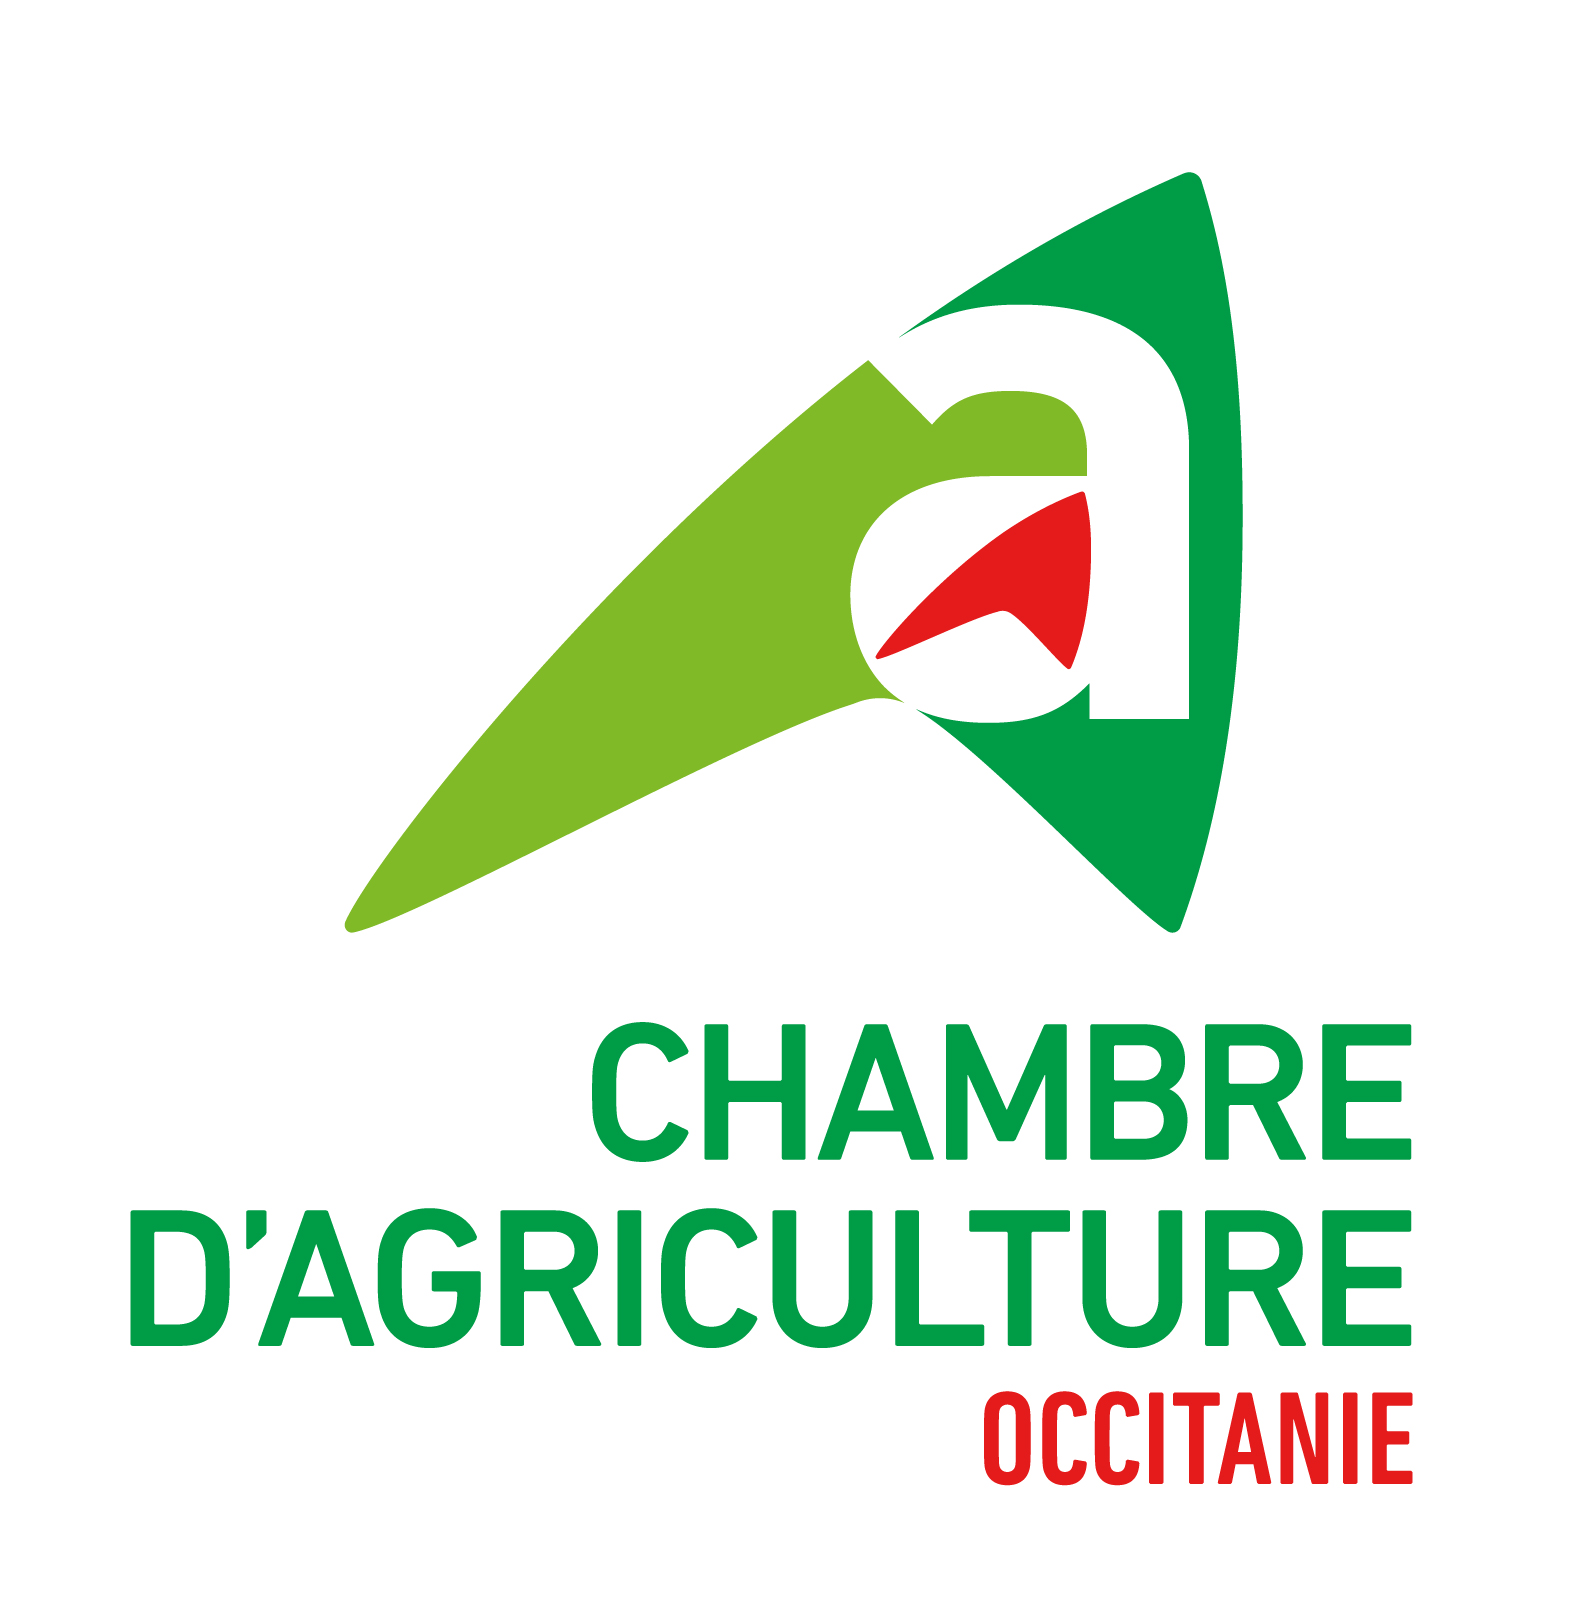 Chambre régionale d'agriculture d'Occitanie, retour à la page d'accueil